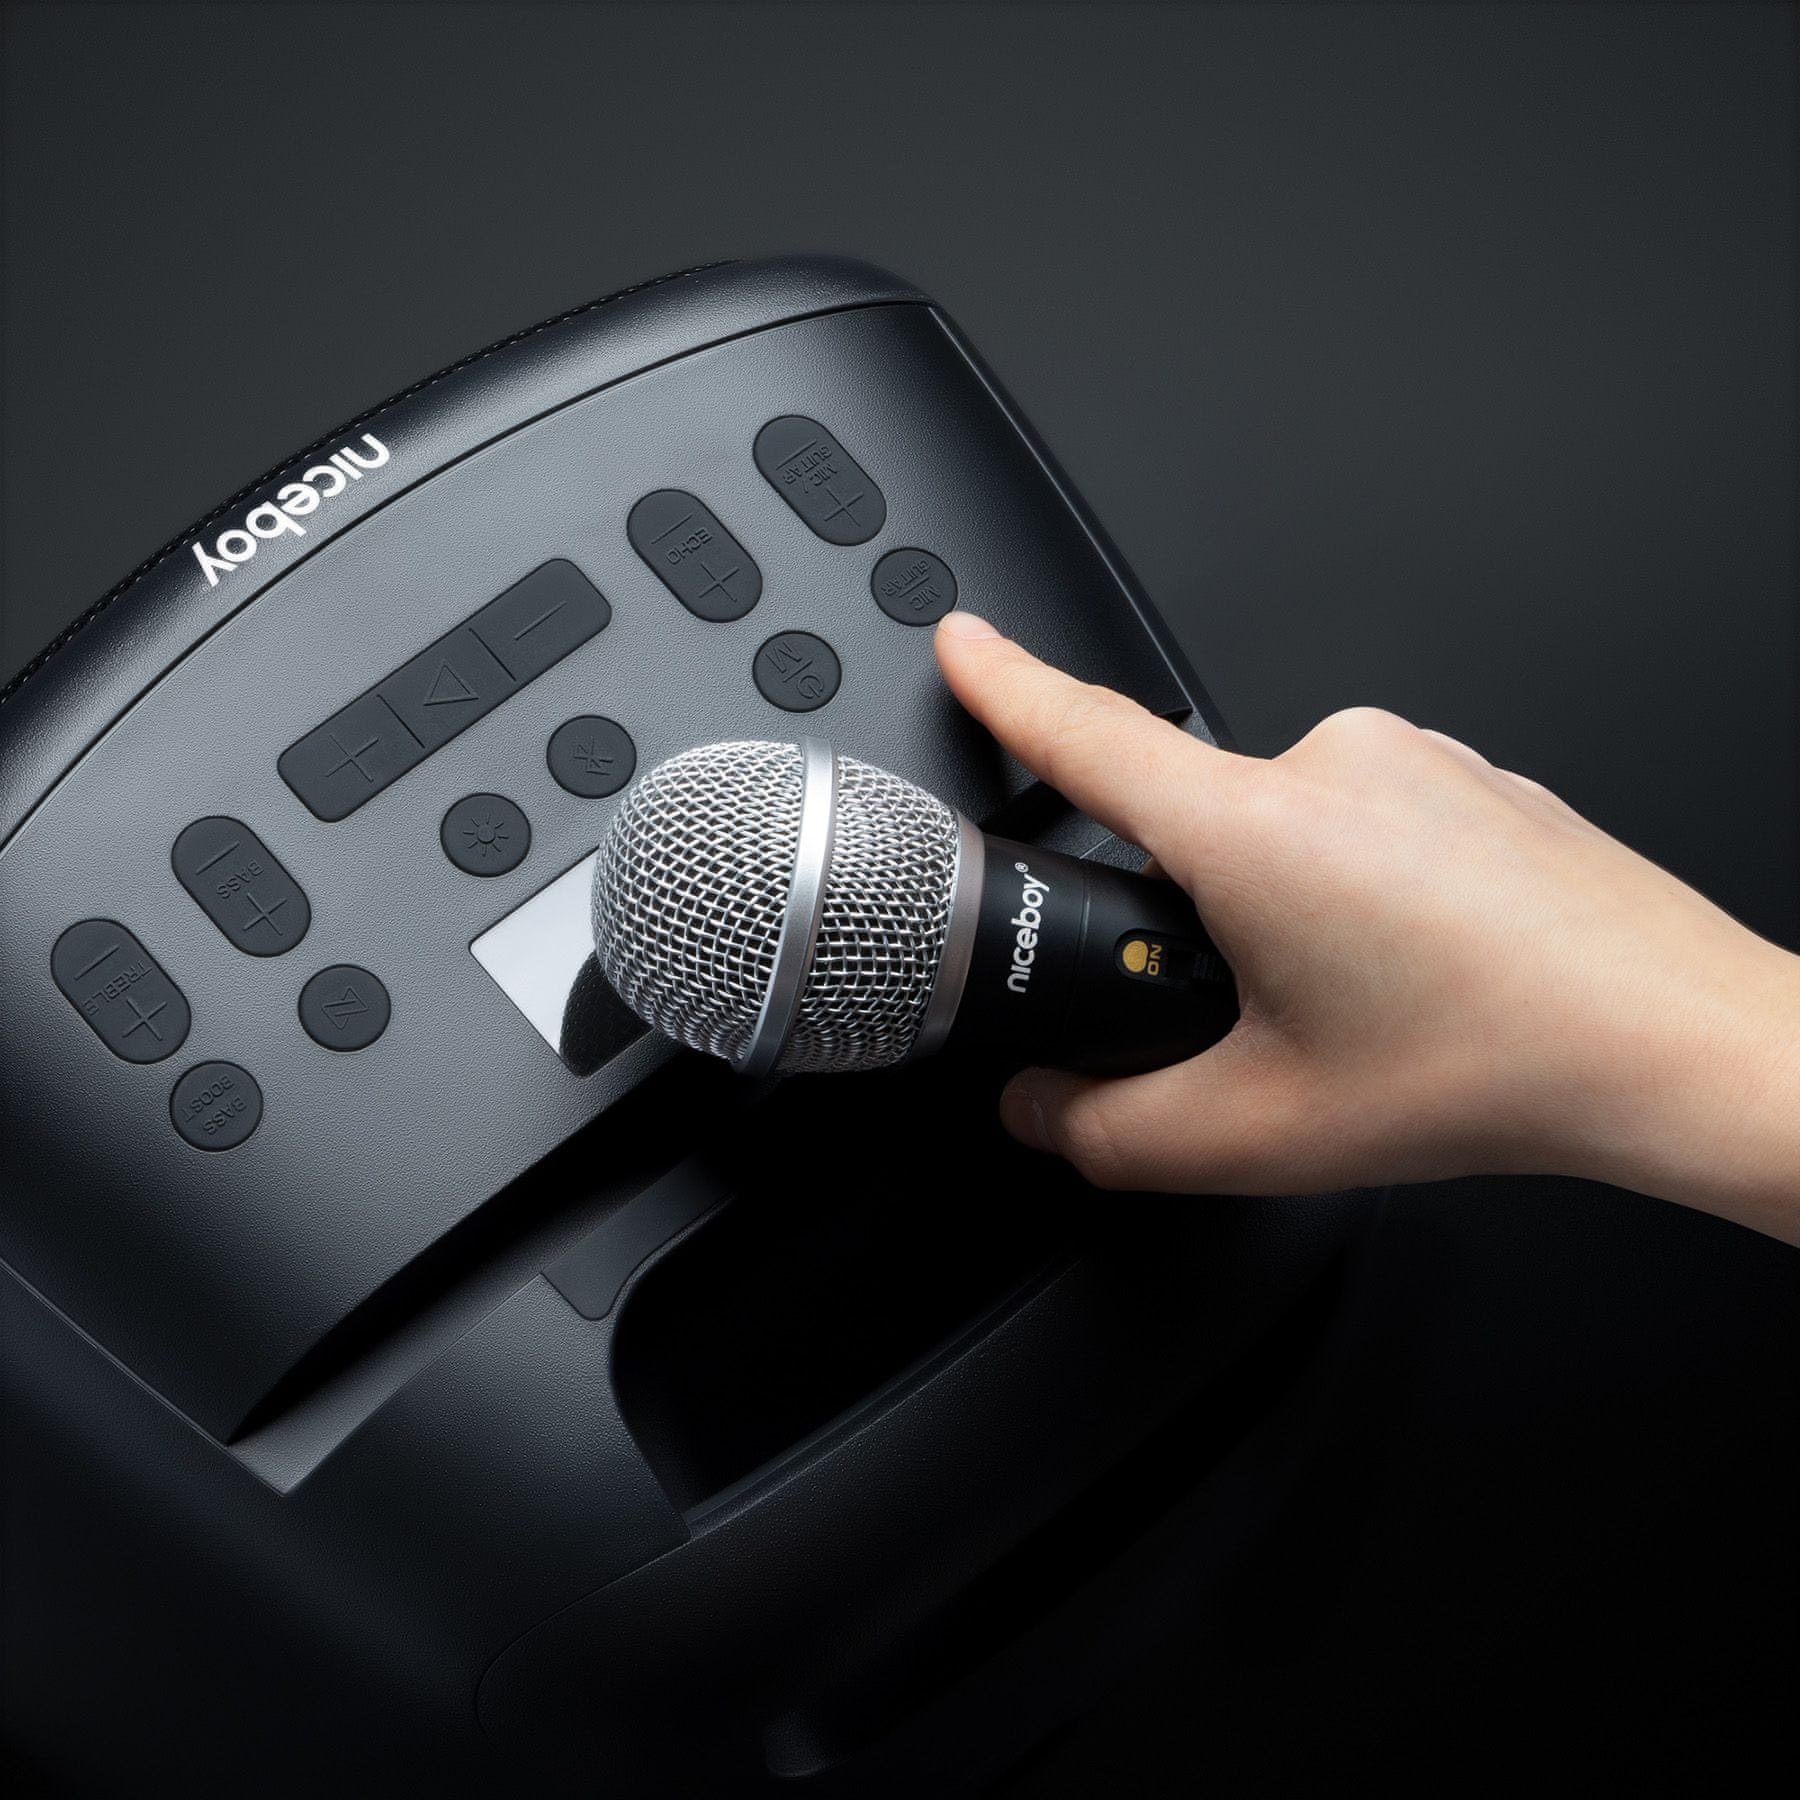 Bluetooth párty reproduktor Niceboy party boy 2 100w maxxbass technologie ipx4 odolnost vodě světelné efekty karaoke možnost připojení hudebního nástroje výdrž 20 h na nabití usb přehrávání microSD karty aux in bass boost tlačítko multisession mikrofon v balení